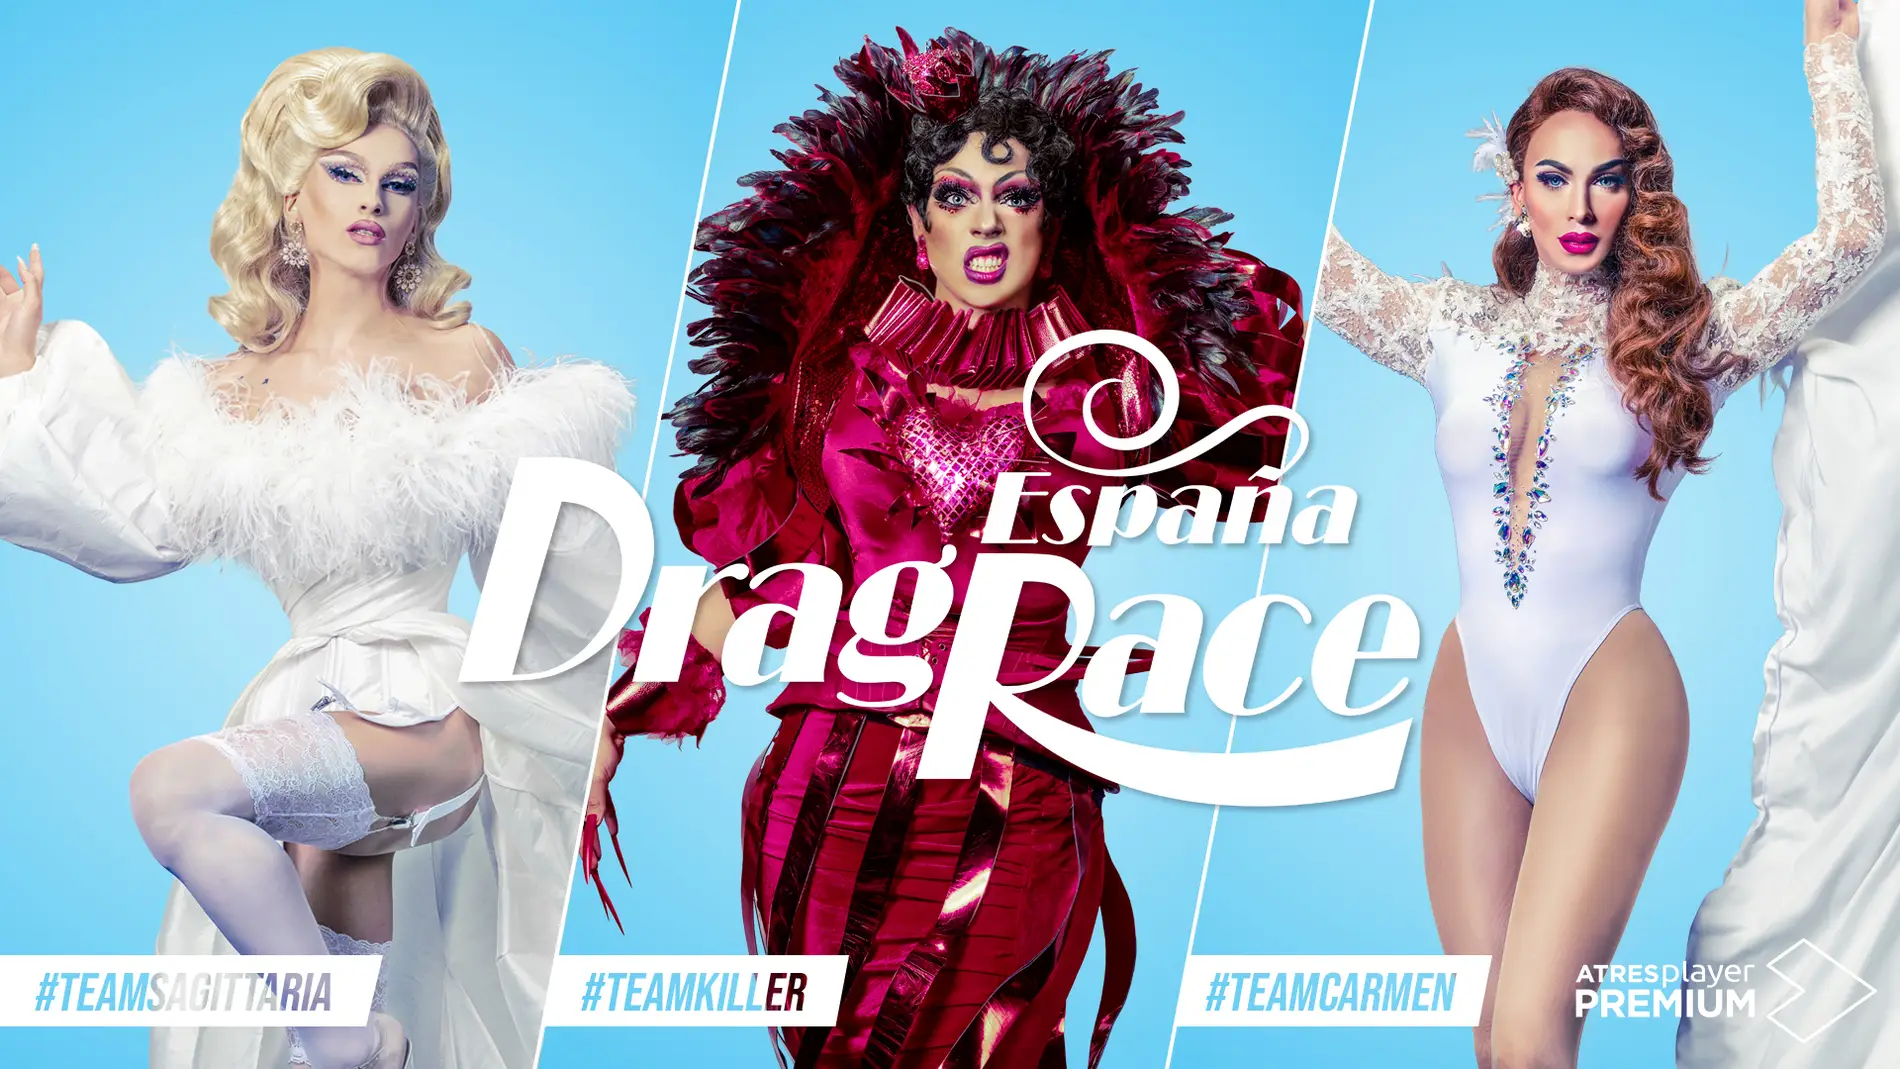 ‘Drag Race España’ ya tiene finalistas y anuncia ‘El reencuentro’ para el próximo domingo en ATRESplayer PREMIUM